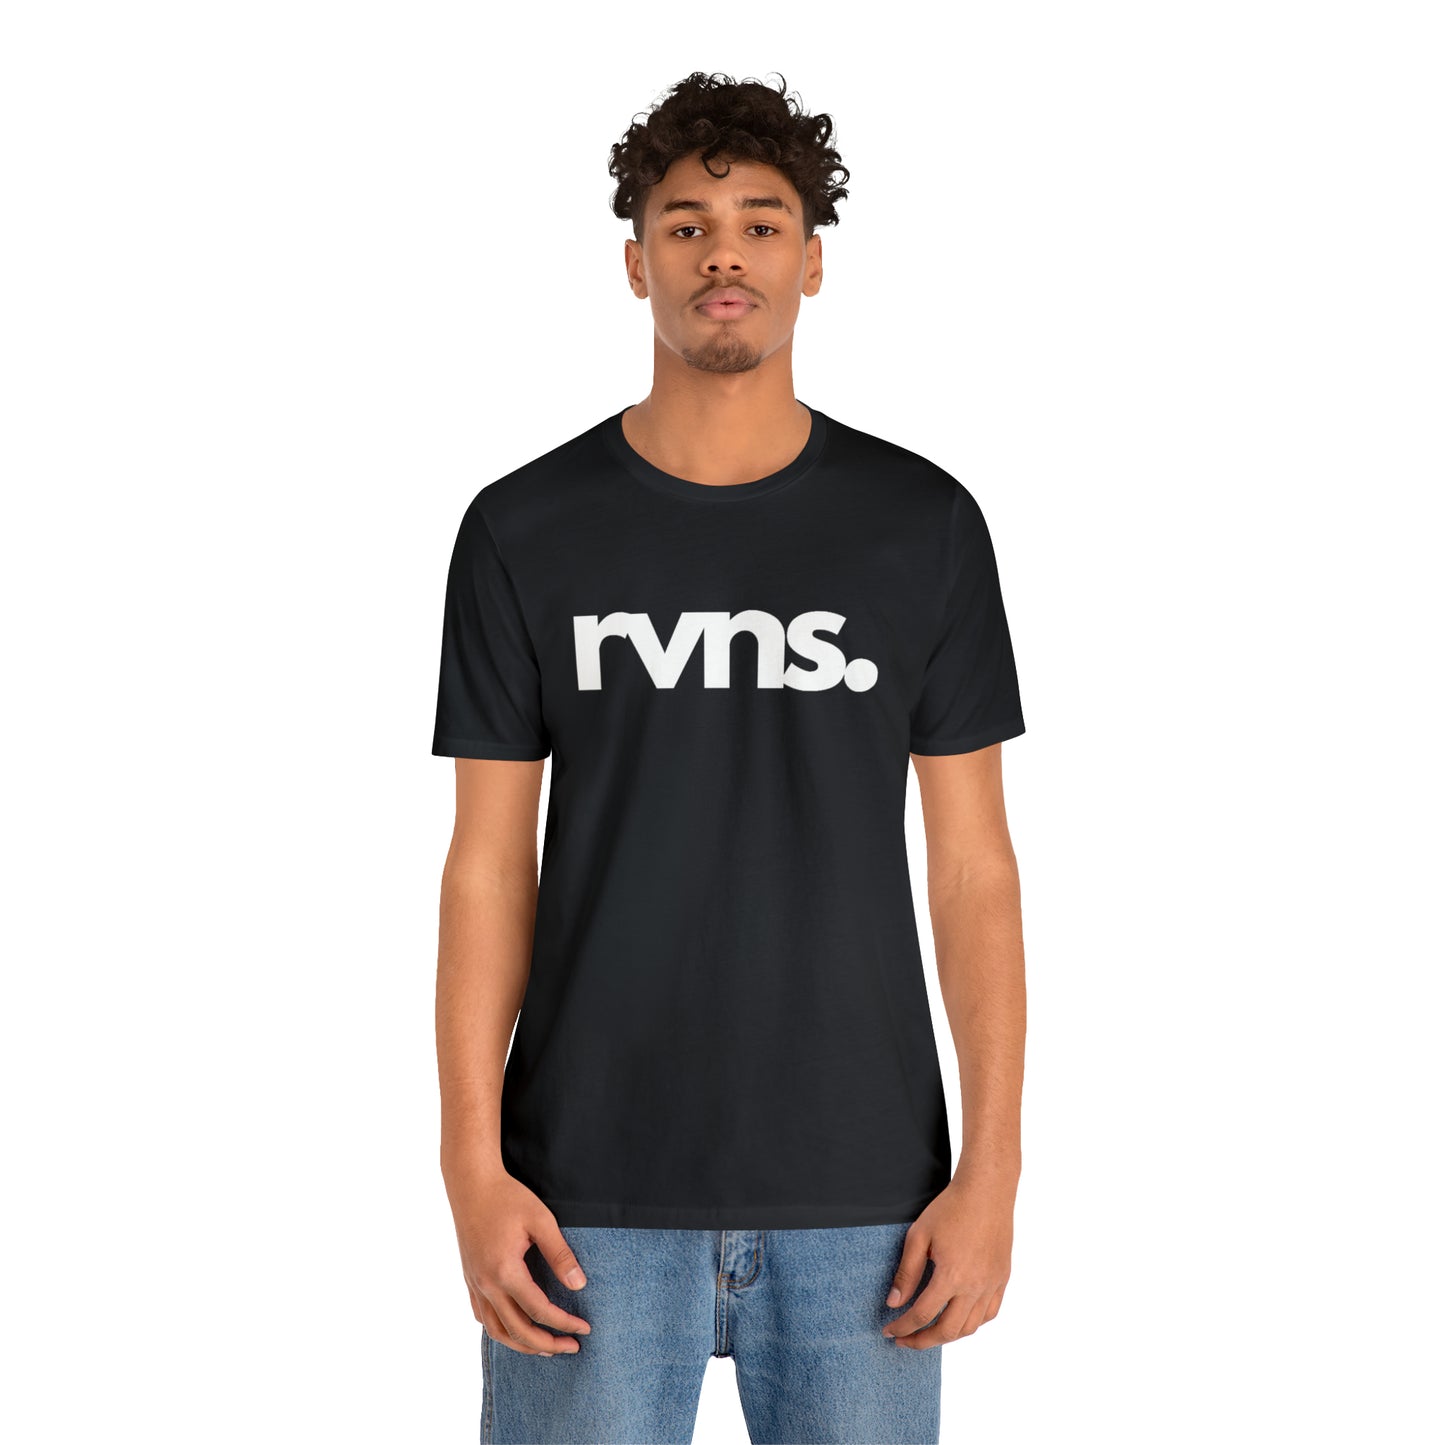 RVNS by RVNS - Unisex Short Sleeve Tee